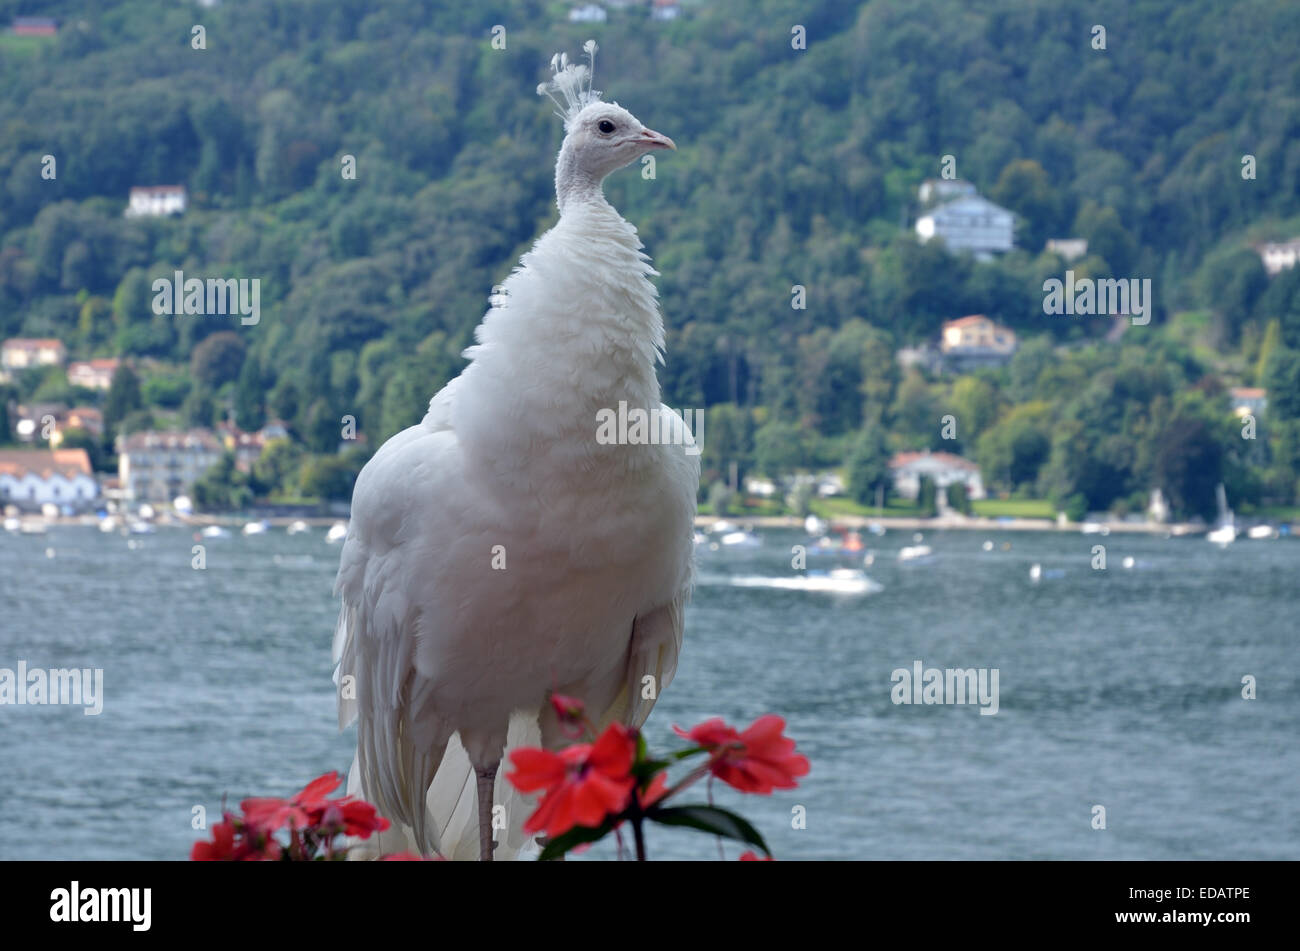 White Peafowl, Garden, Palazzo Borromeo, Lake Maggiore, Lombardi, Italy, Europe Stock Photo